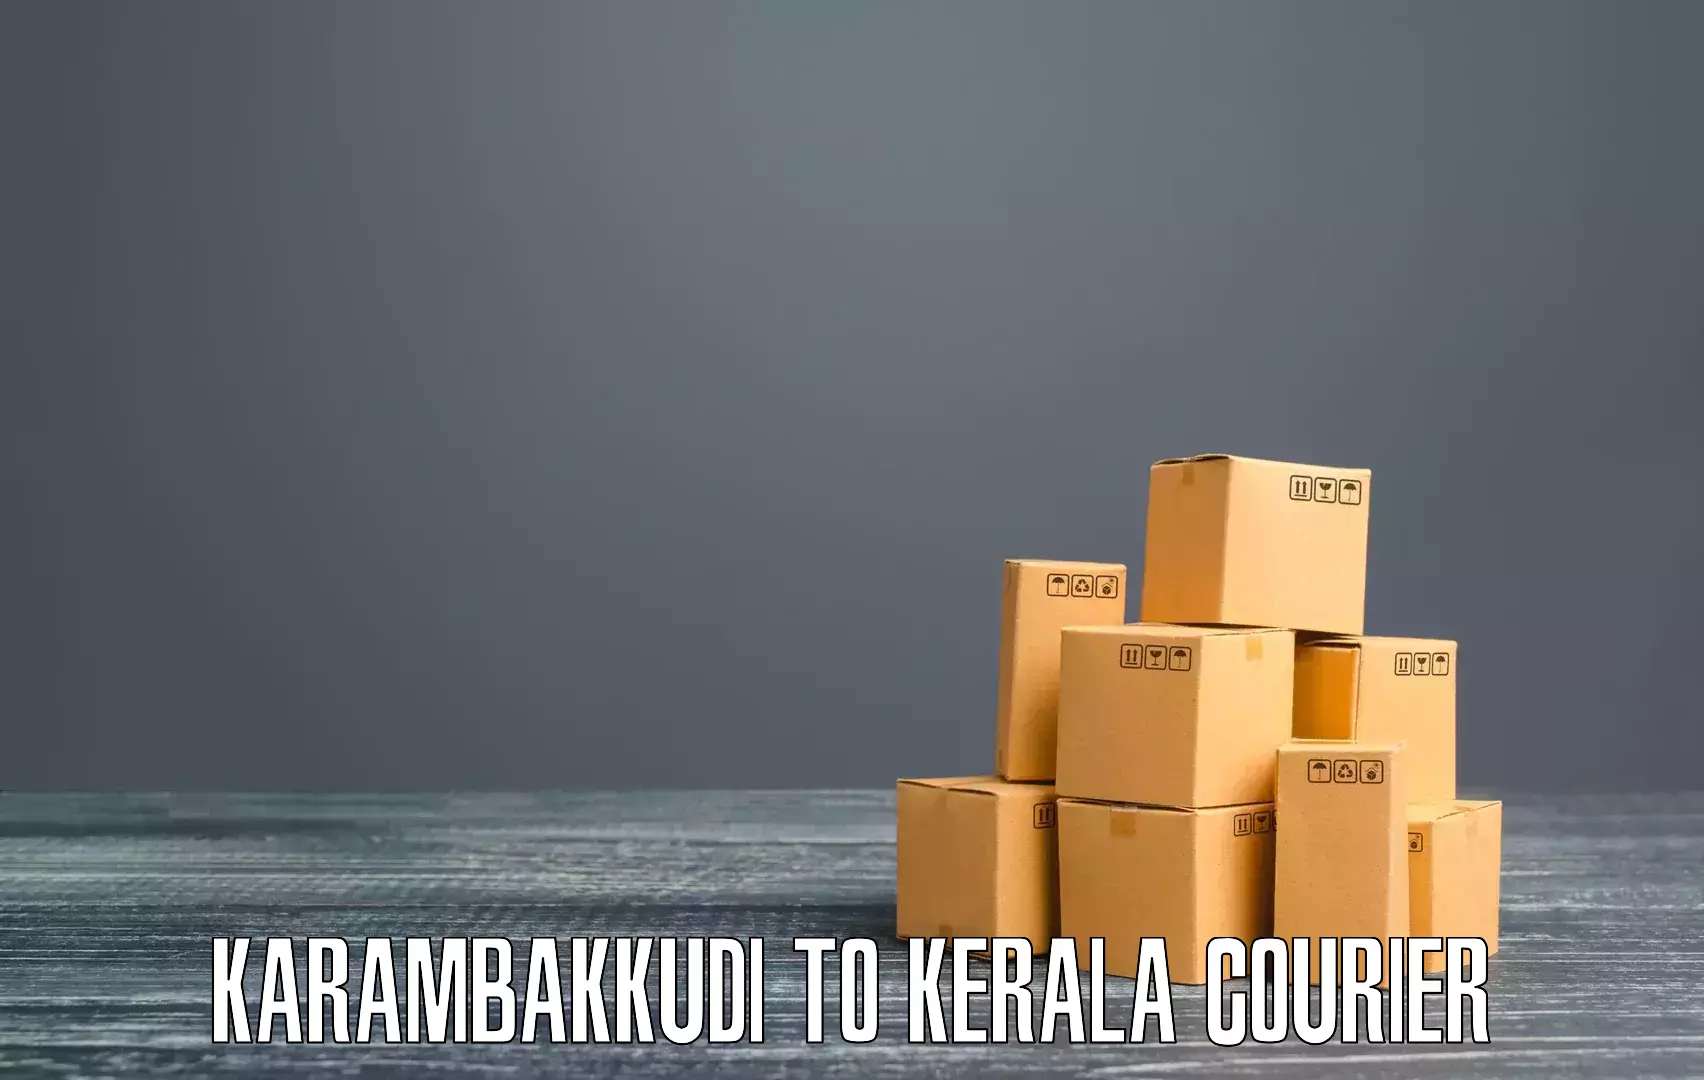 Sustainable delivery practices Karambakkudi to Kuthuparamba